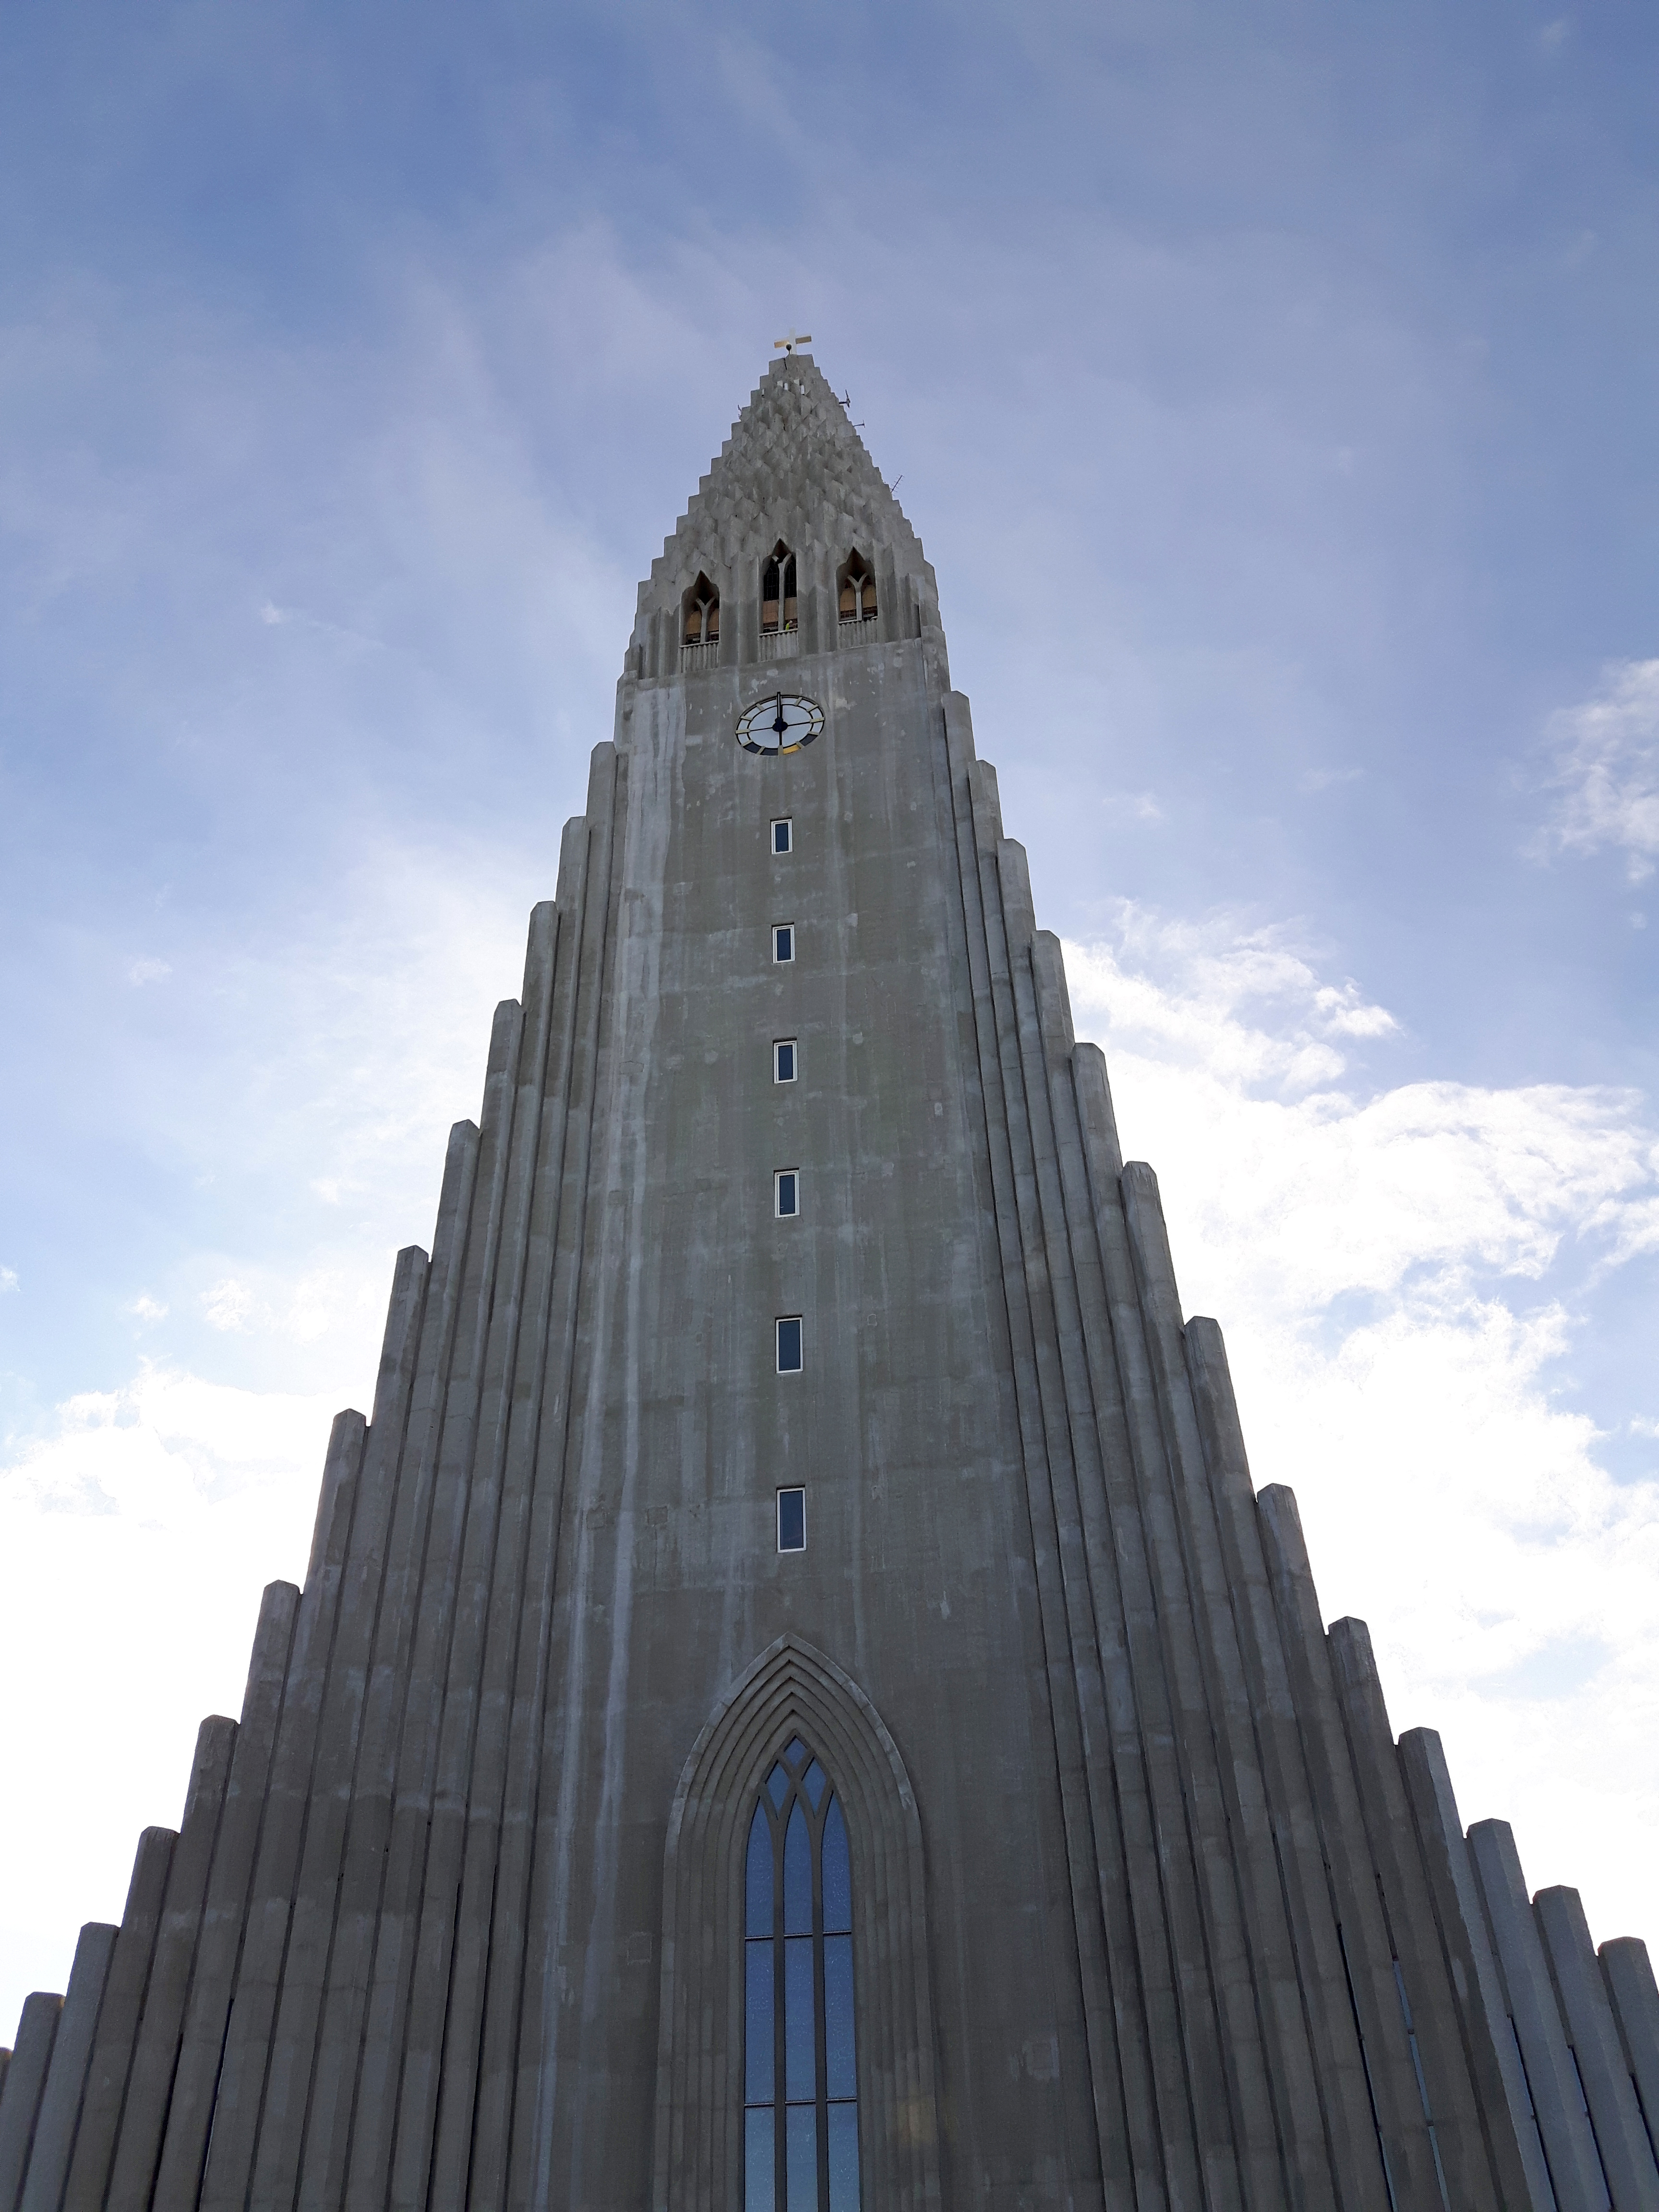 Hallgrímskirkja_Reykjavik_Iceland